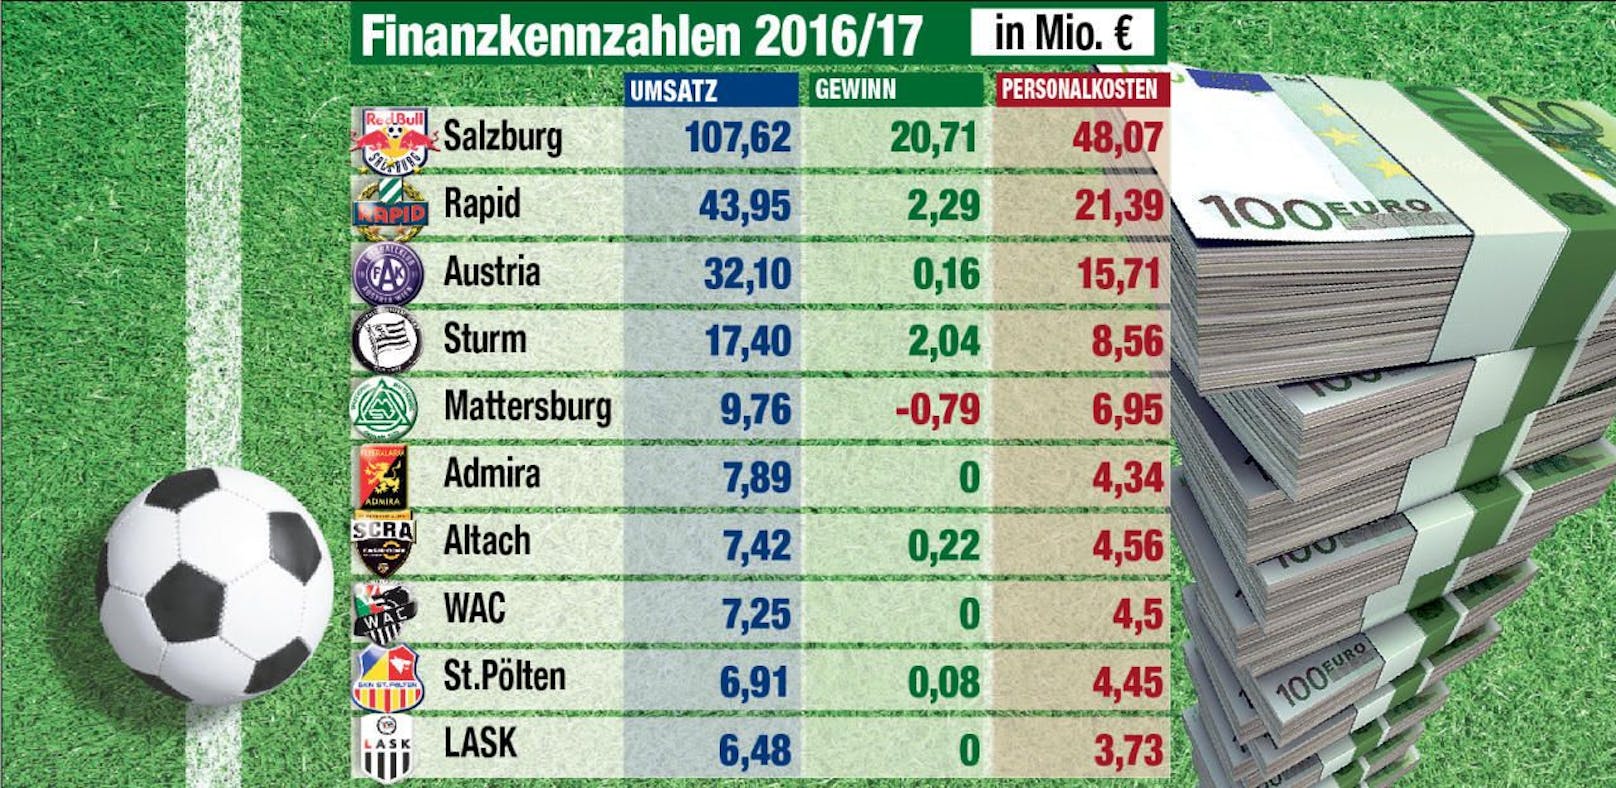 Finanzzahlen der Bundesliga-Saison 2016/17